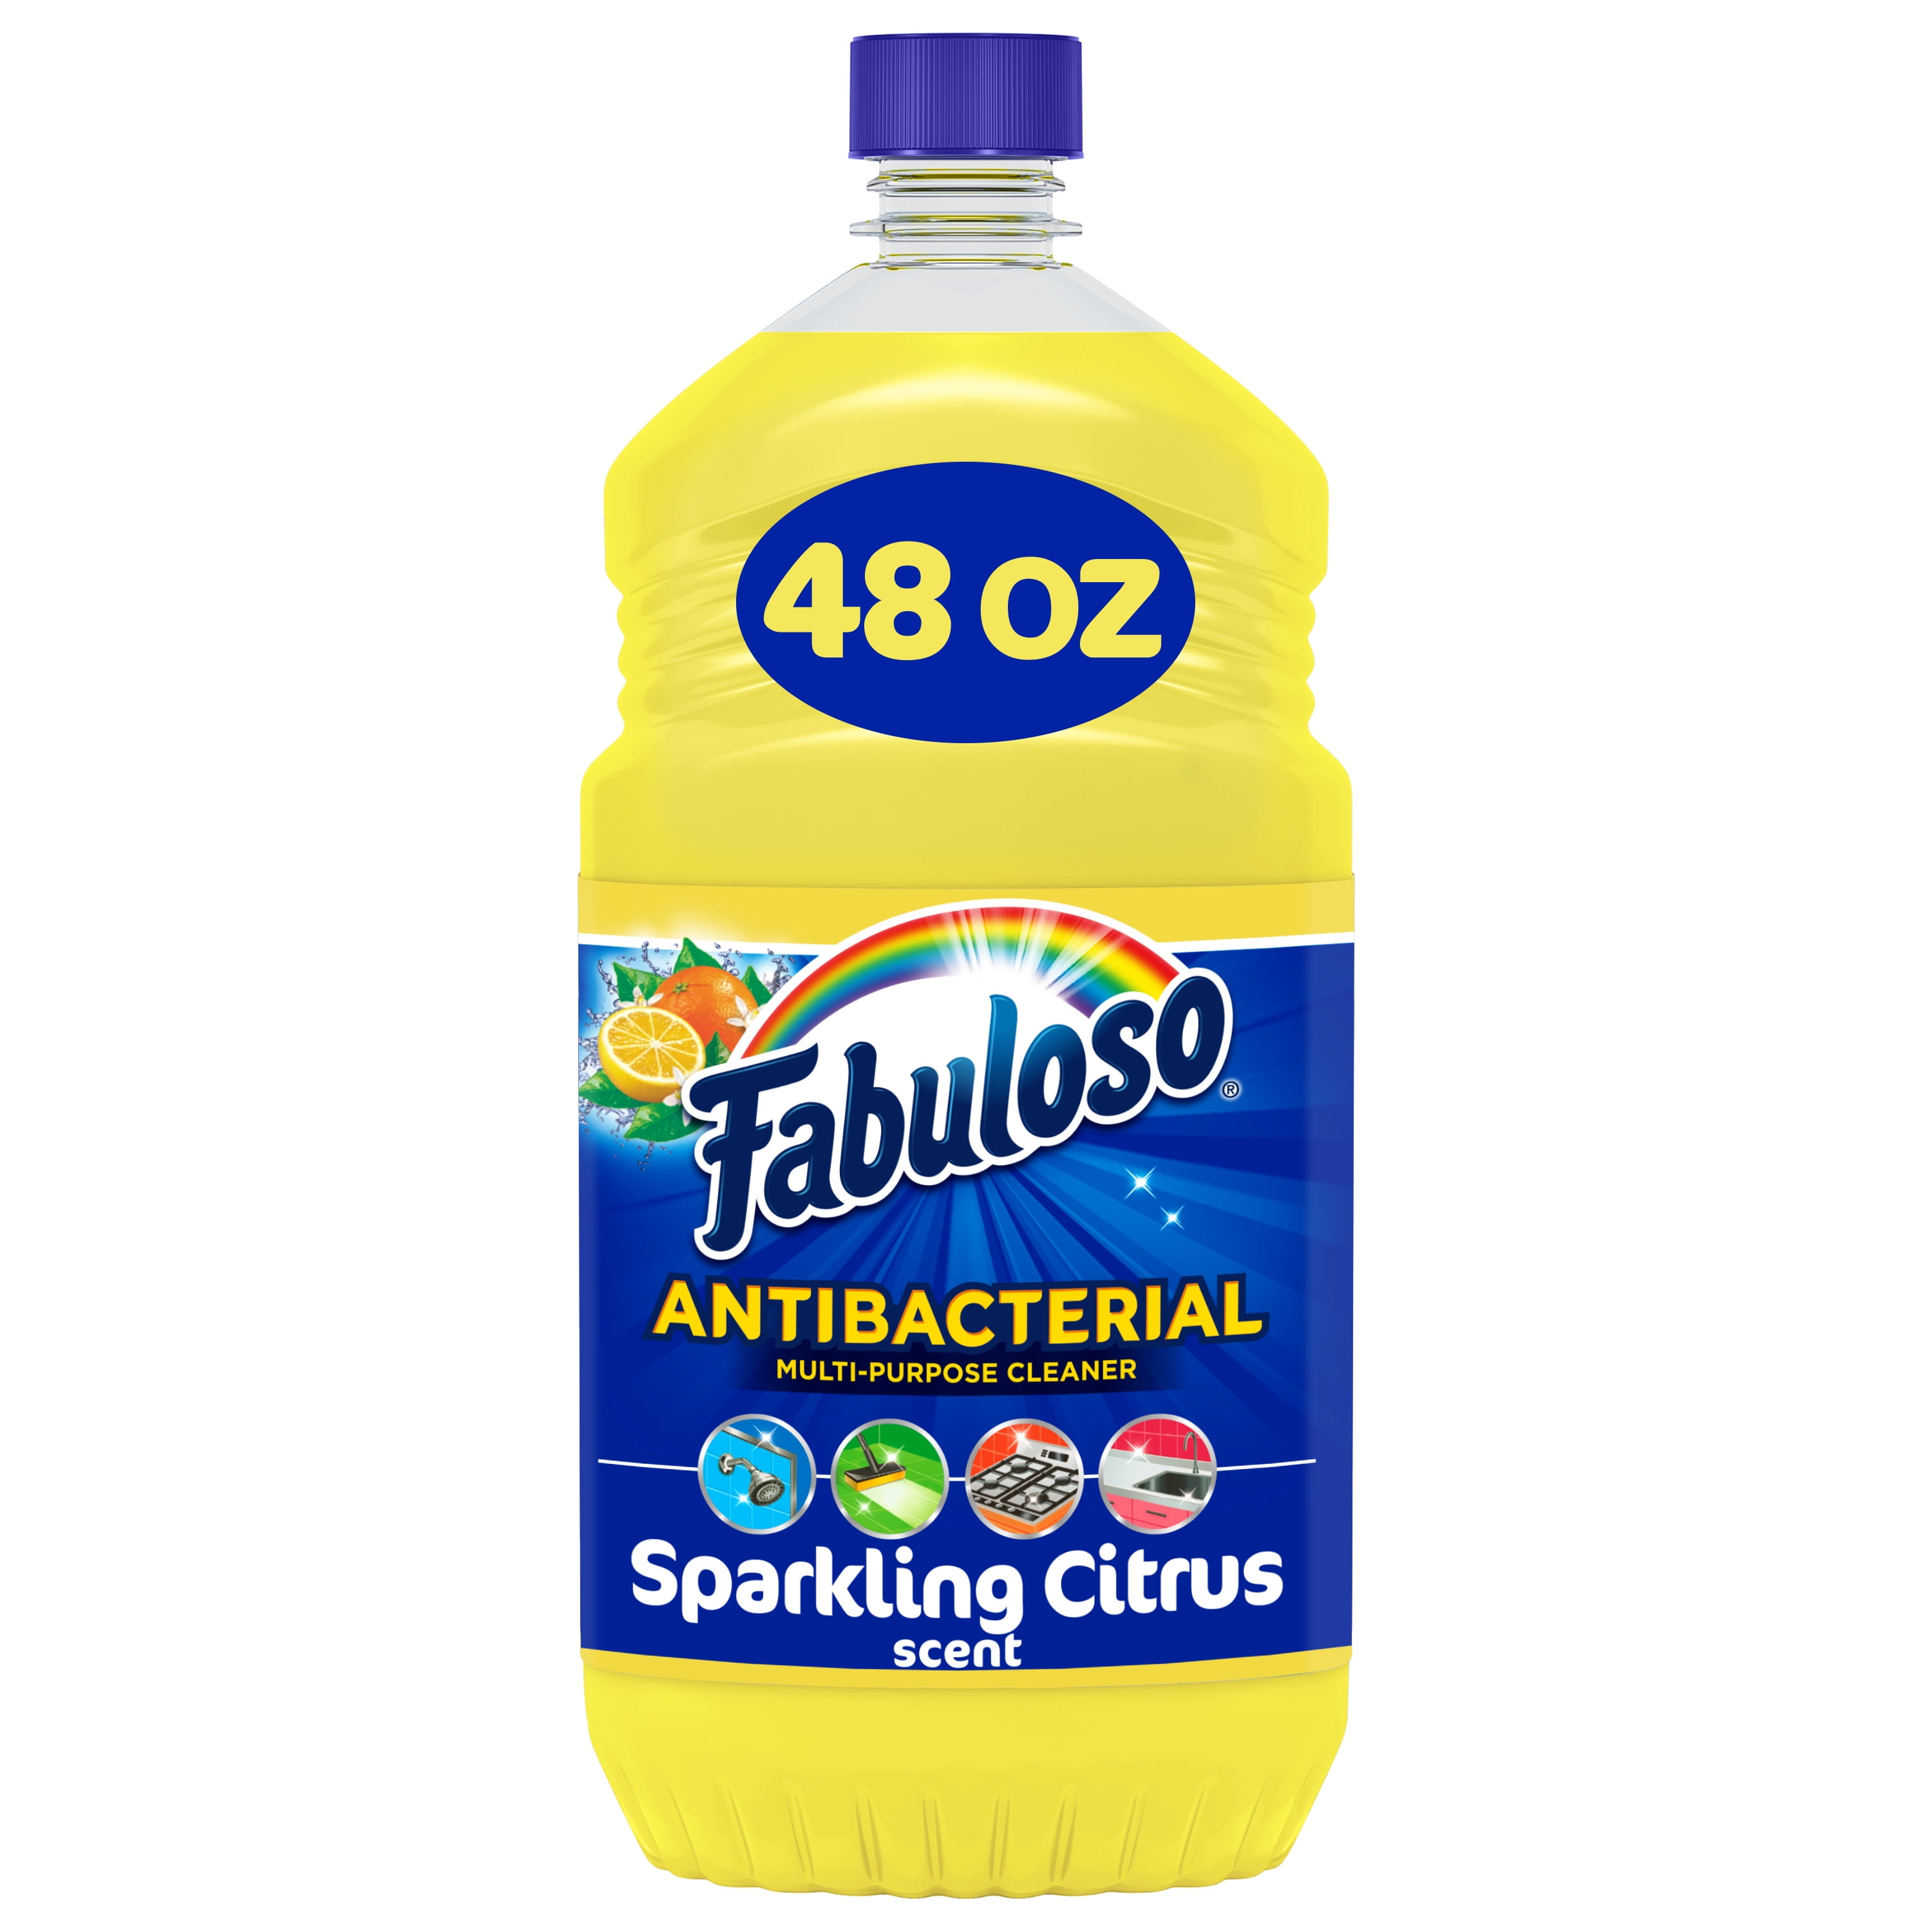 Fabuloso® Antibacterial Multi-Purpose Cleaner, Sparkling Citrus Scent, 48 fl oz